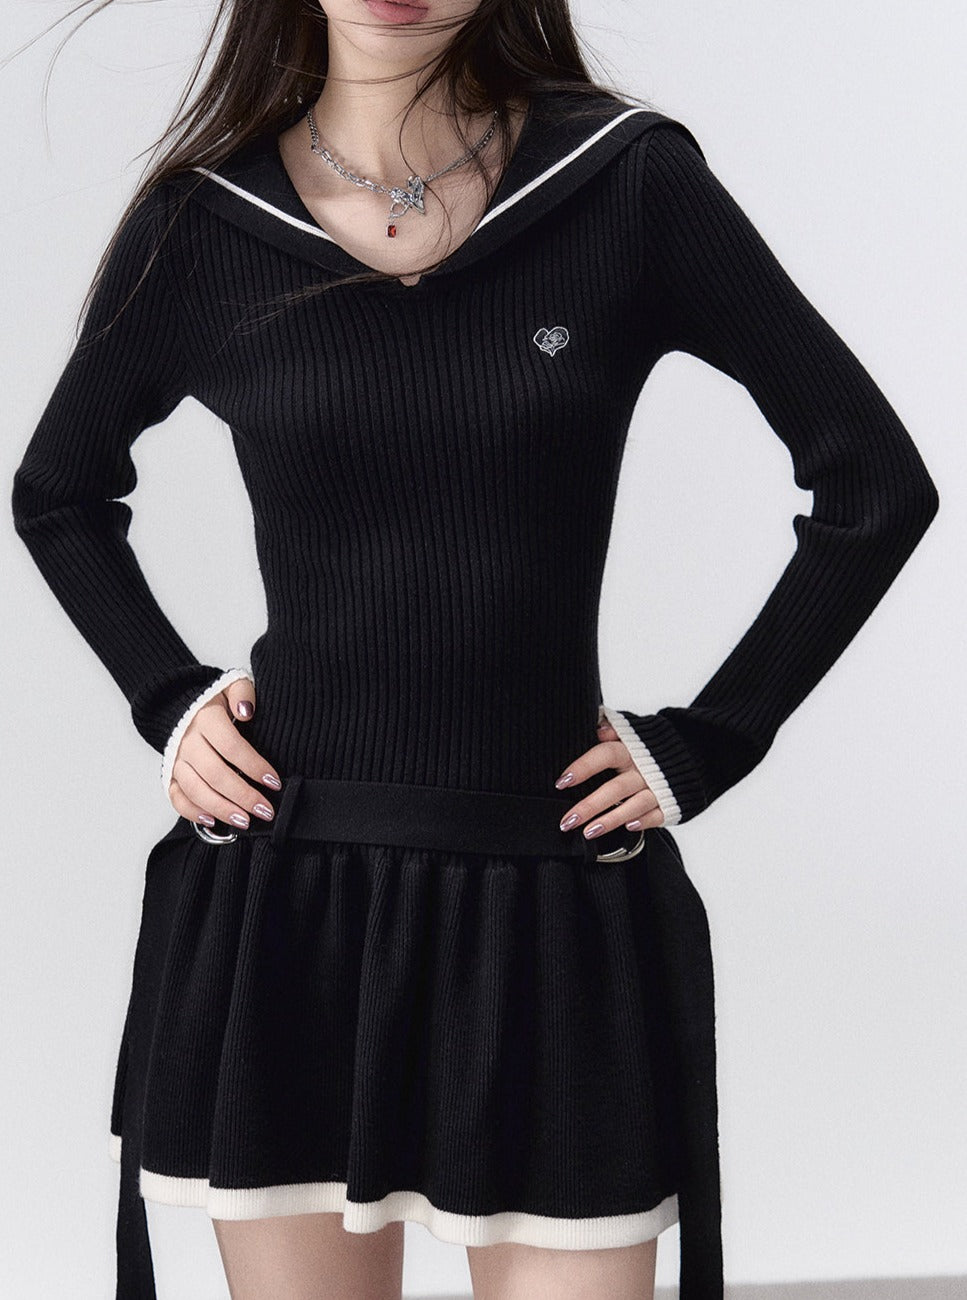 Dark black knit dress